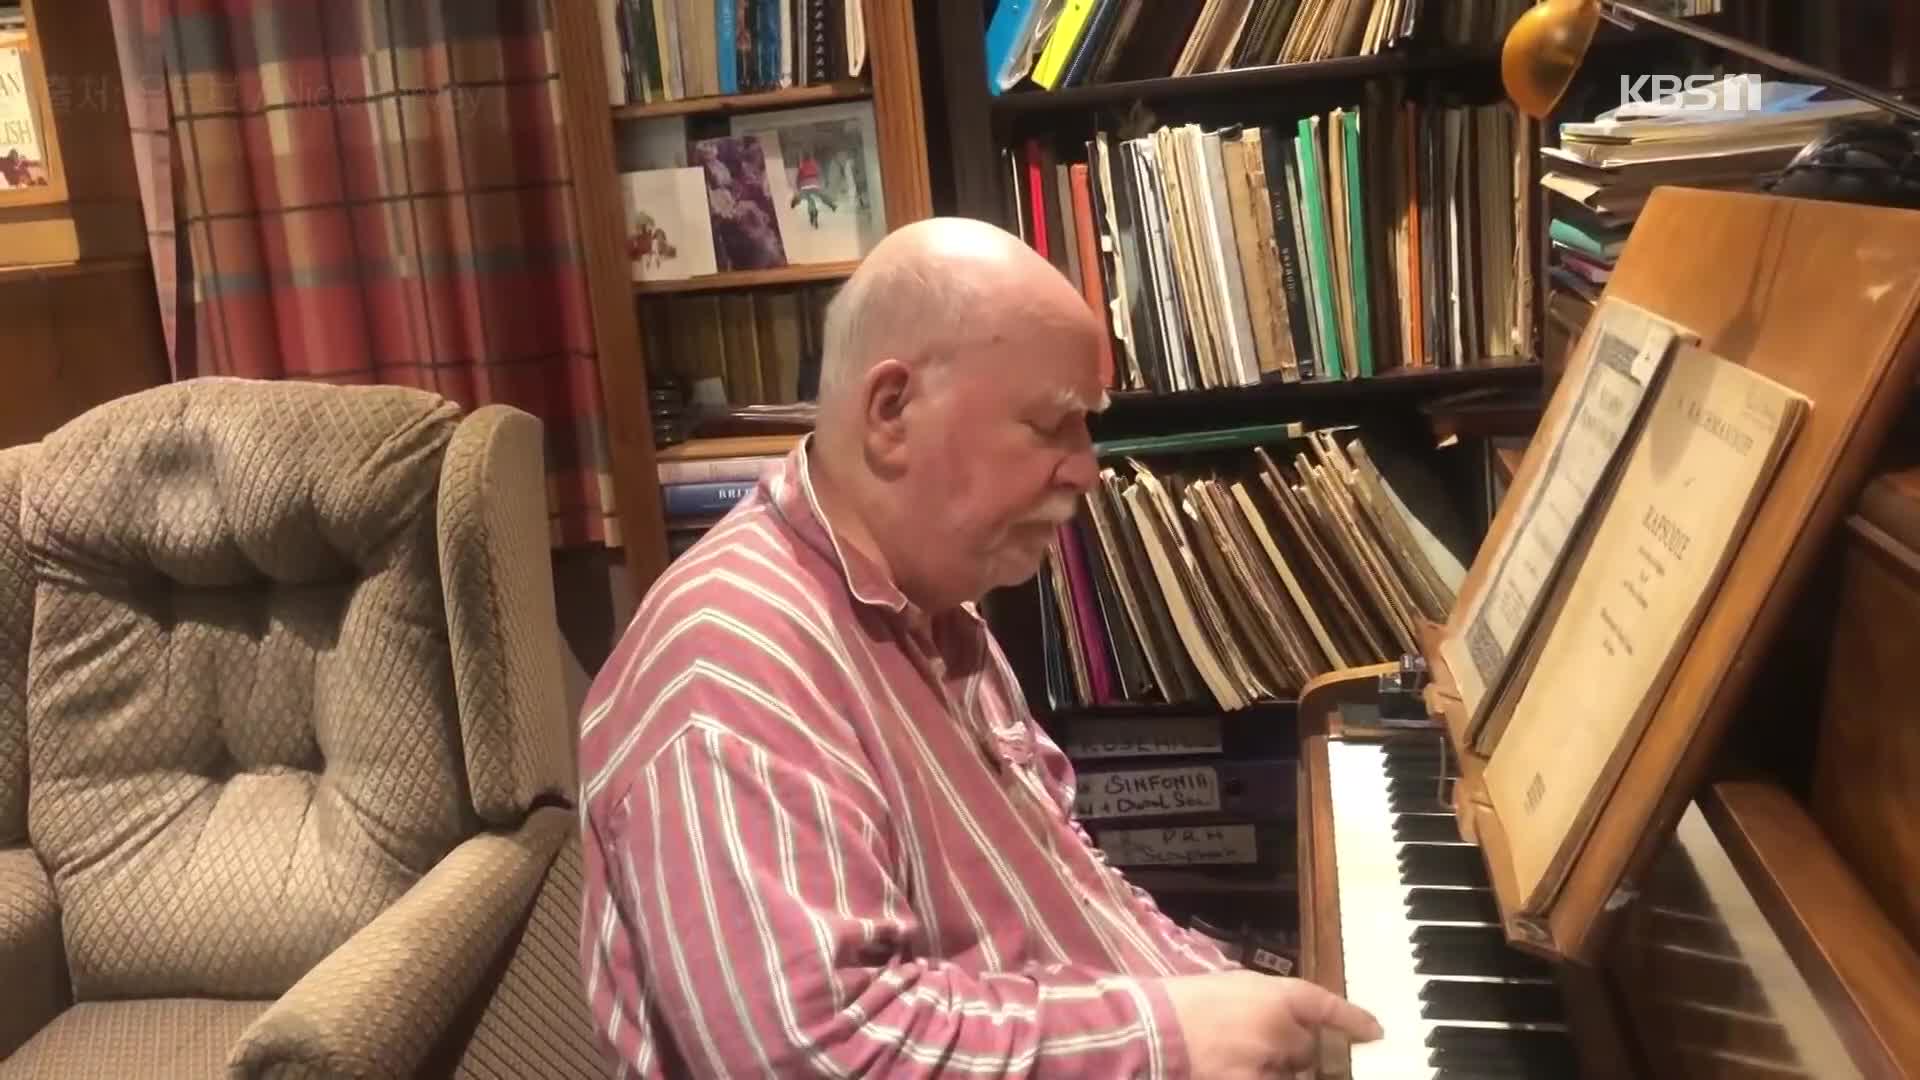 [오늘의 영상] 치매 진단받았지만 사라지지 않은 ‘음악적 재능’